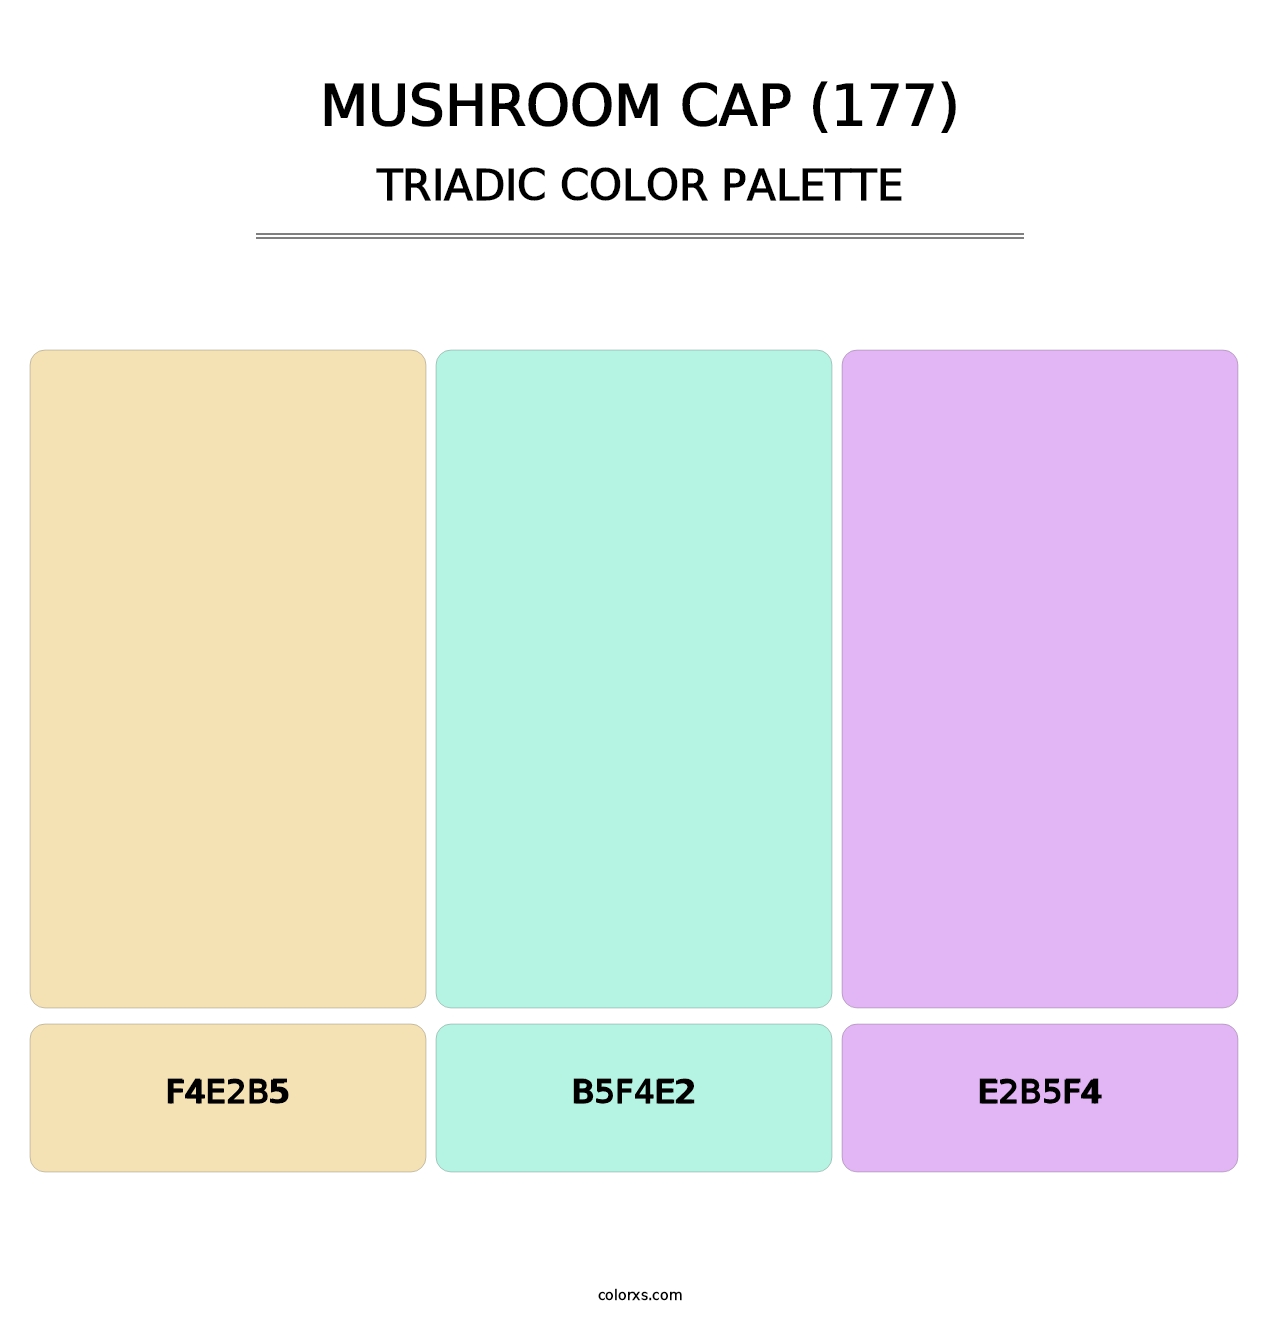 Mushroom Cap (177) - Triadic Color Palette